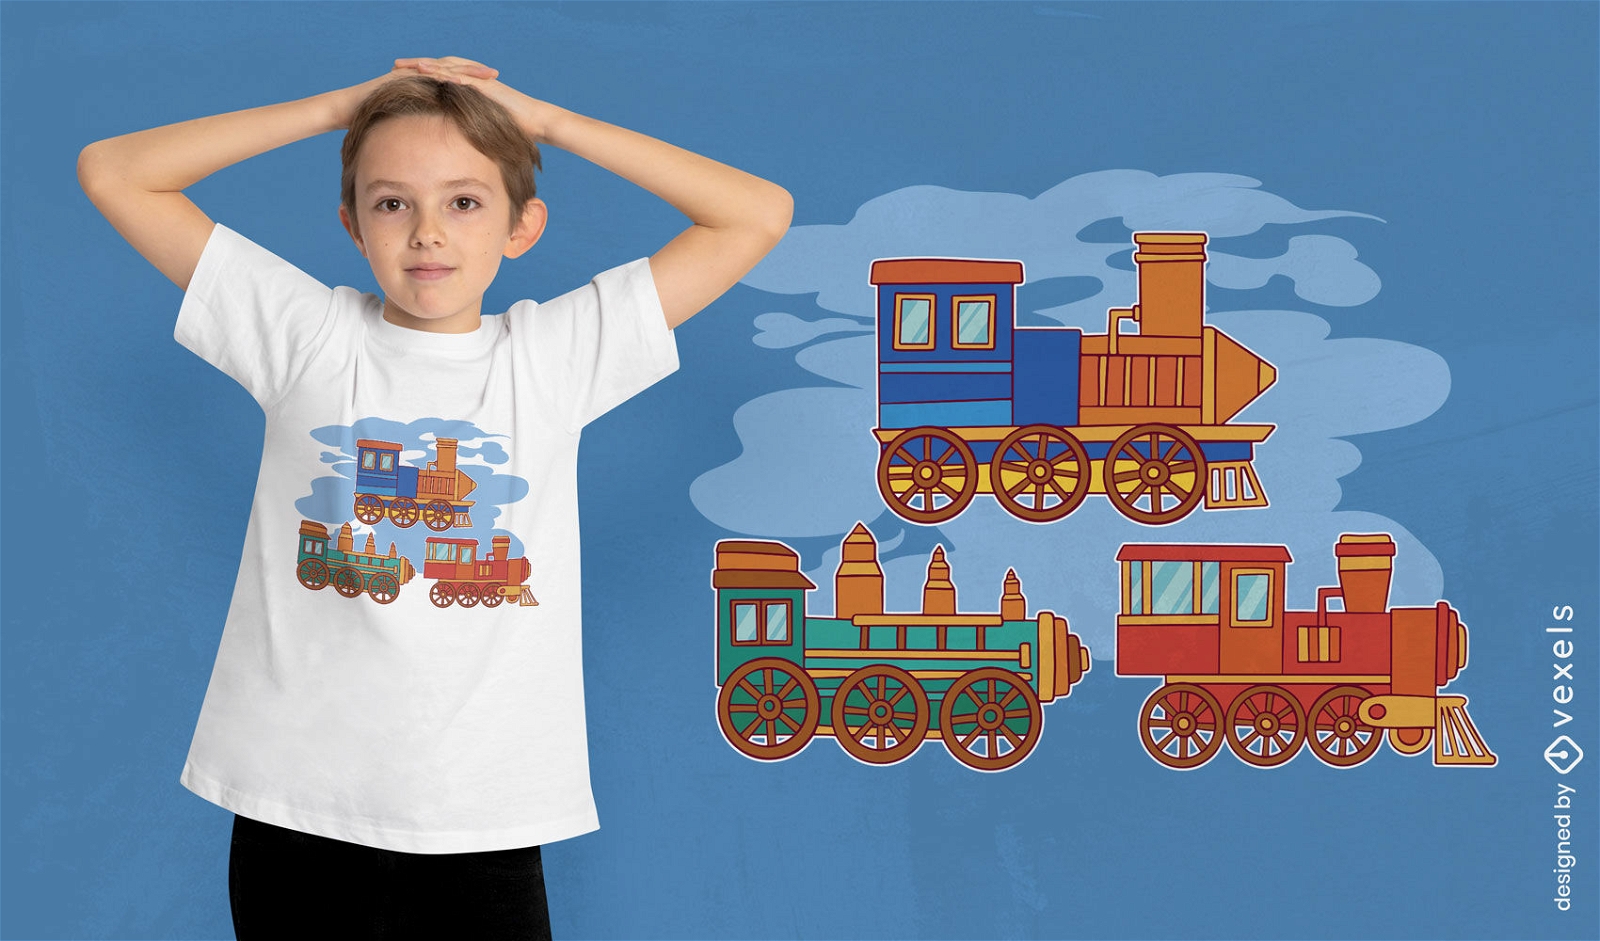 Spielzeugeisenbahnen f?r Kinder-T-Shirt-Design